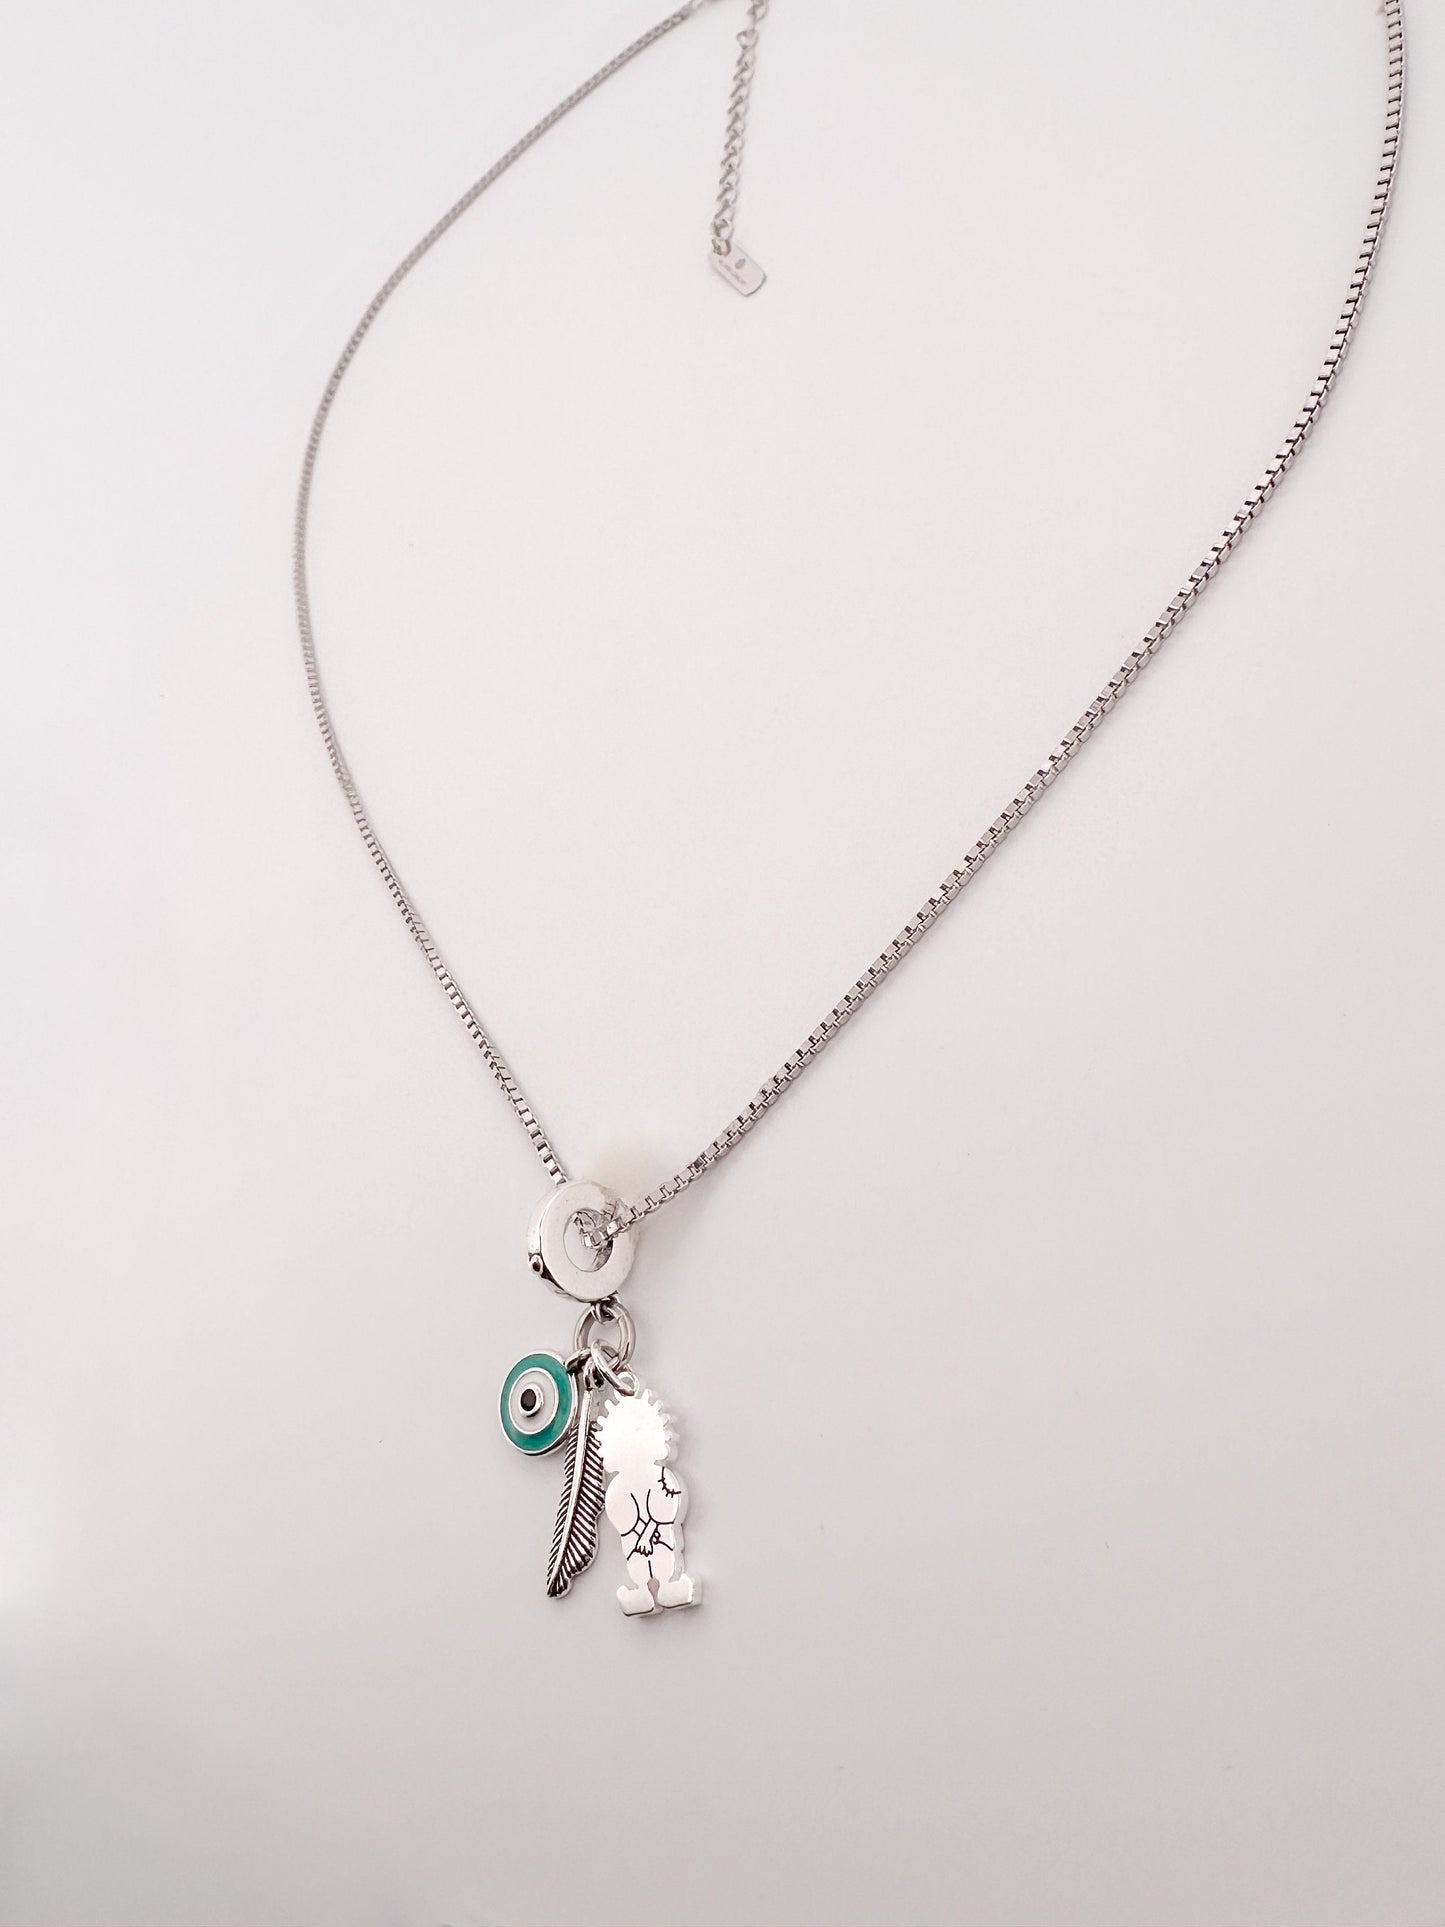 Handala - Turquoise Charm Necklace